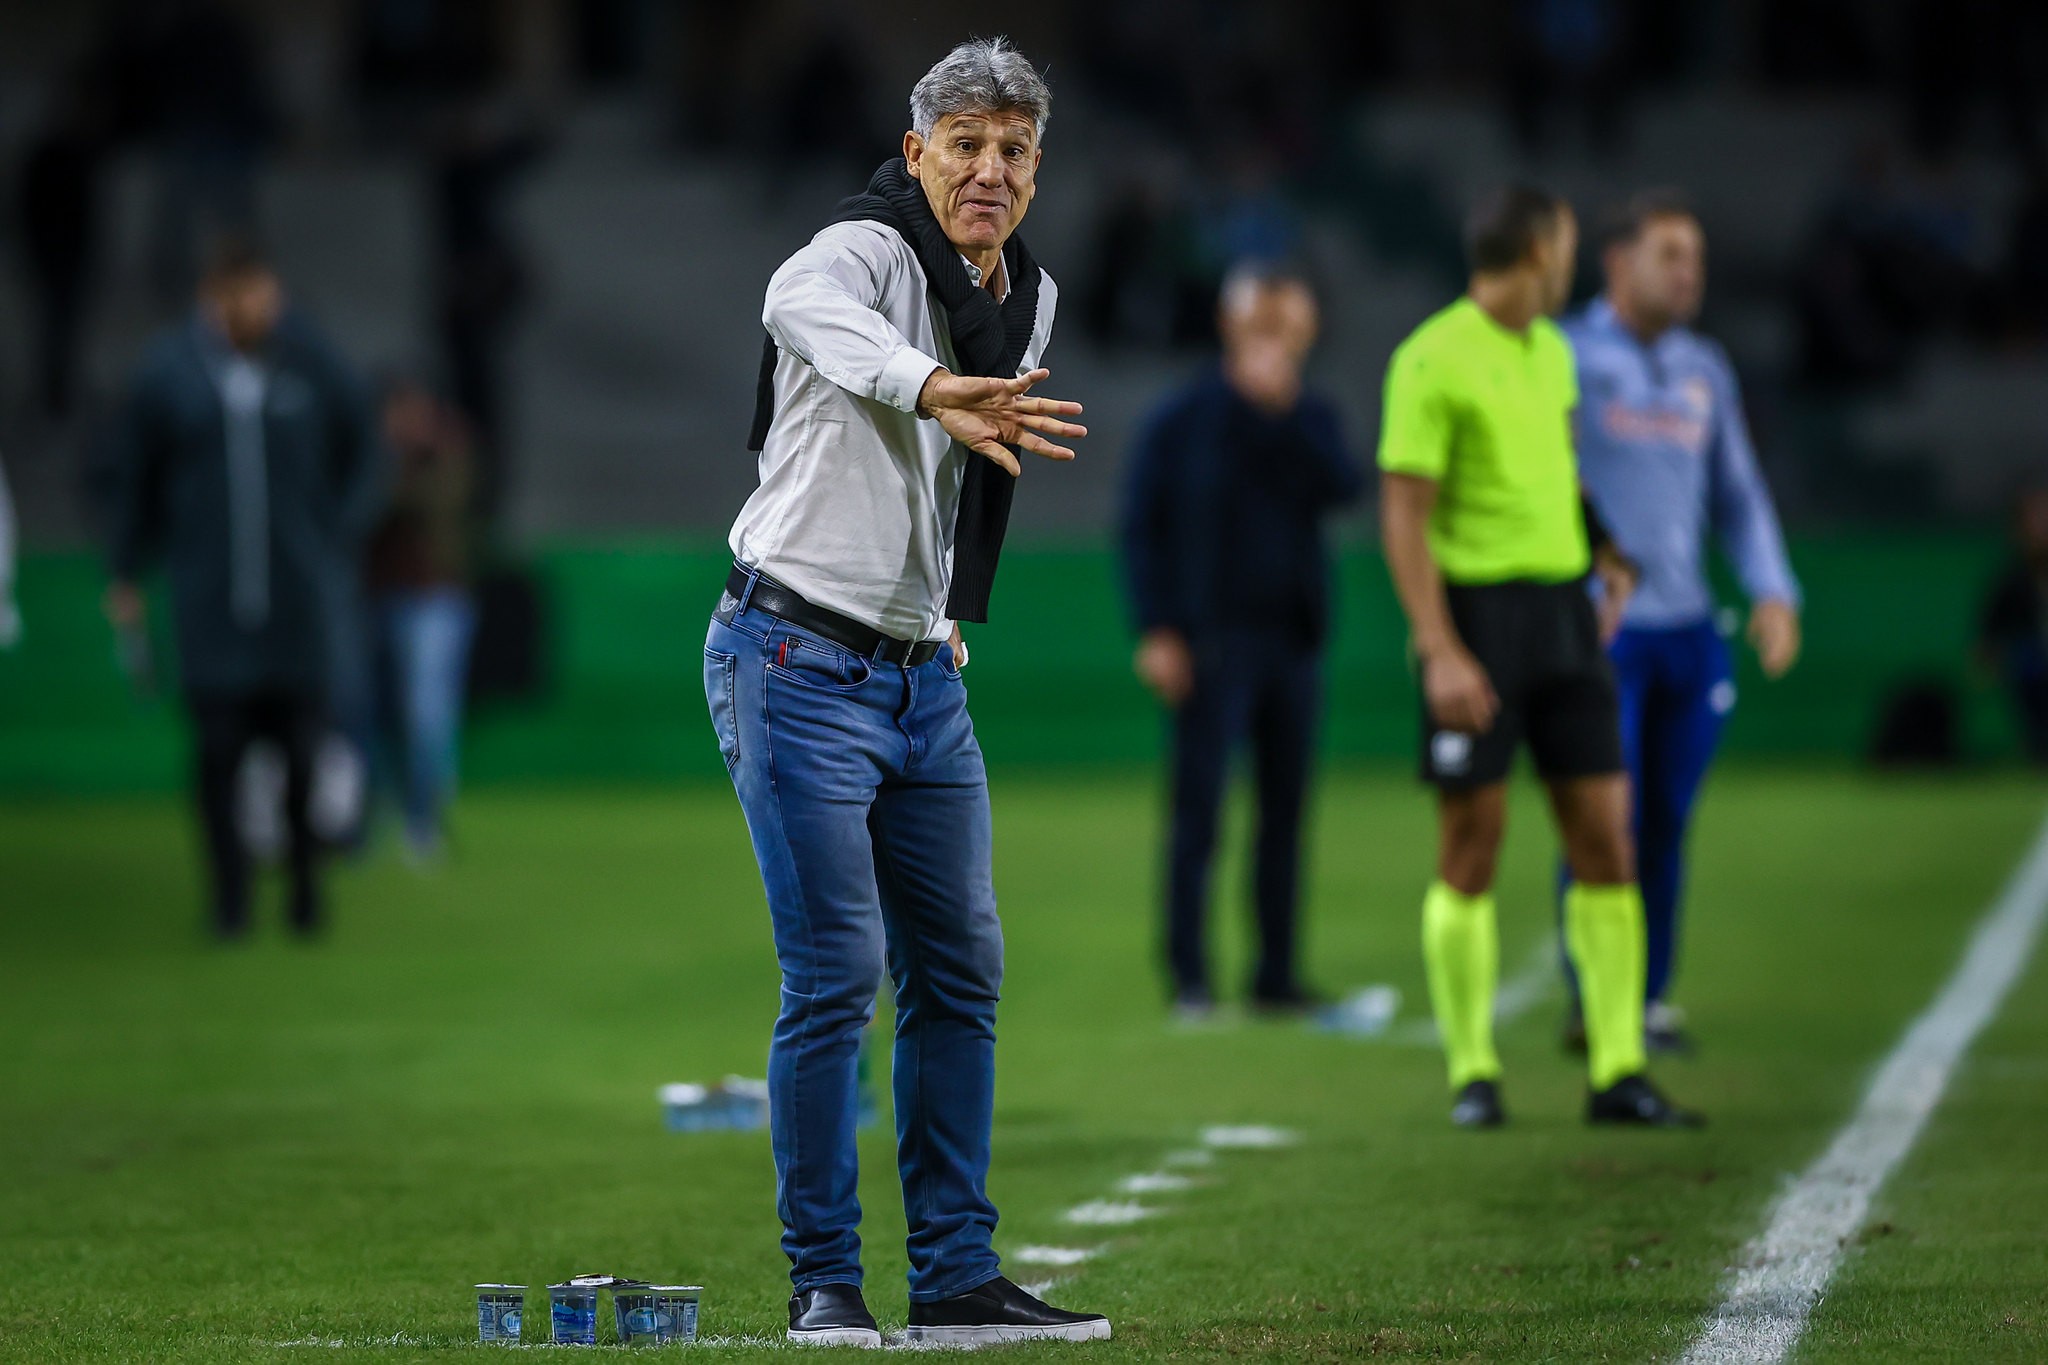 Análise: Grêmio prioriza Libertadores e joga mal em derrota esperada com os reservas